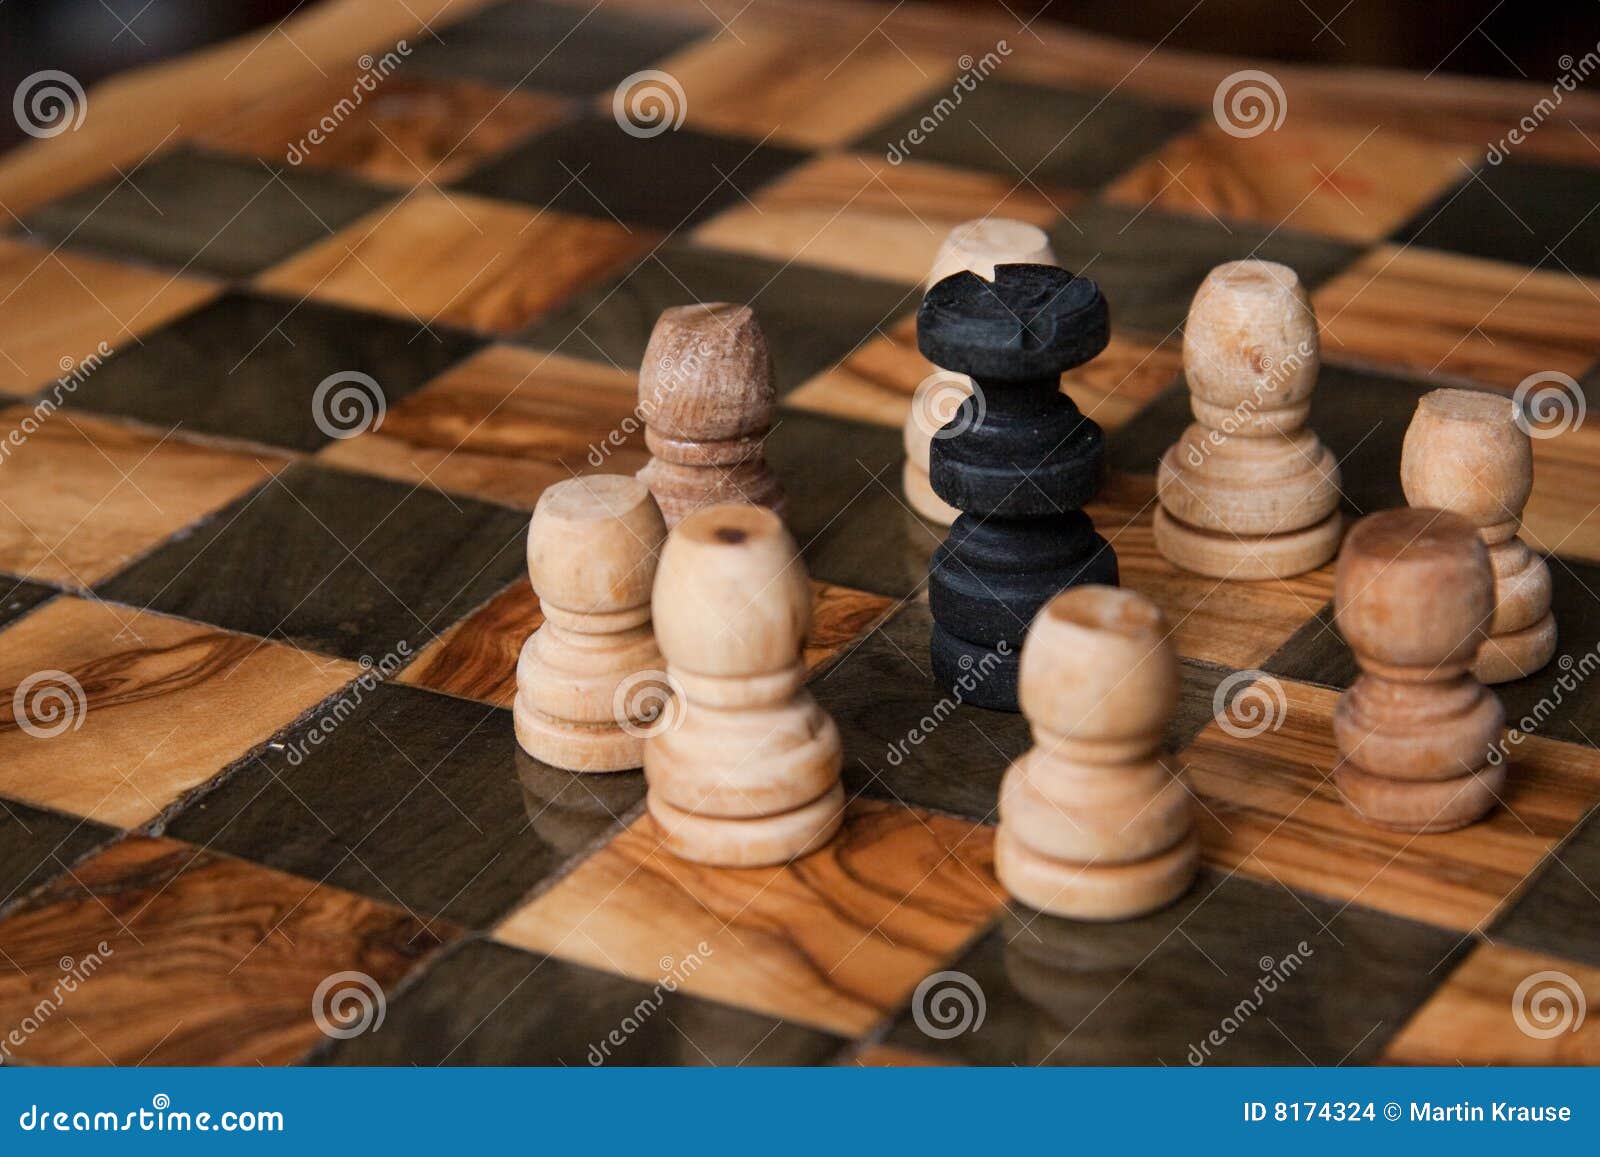 нет шанса. черный король игры шахмат pawns окружённый некоторая белизна